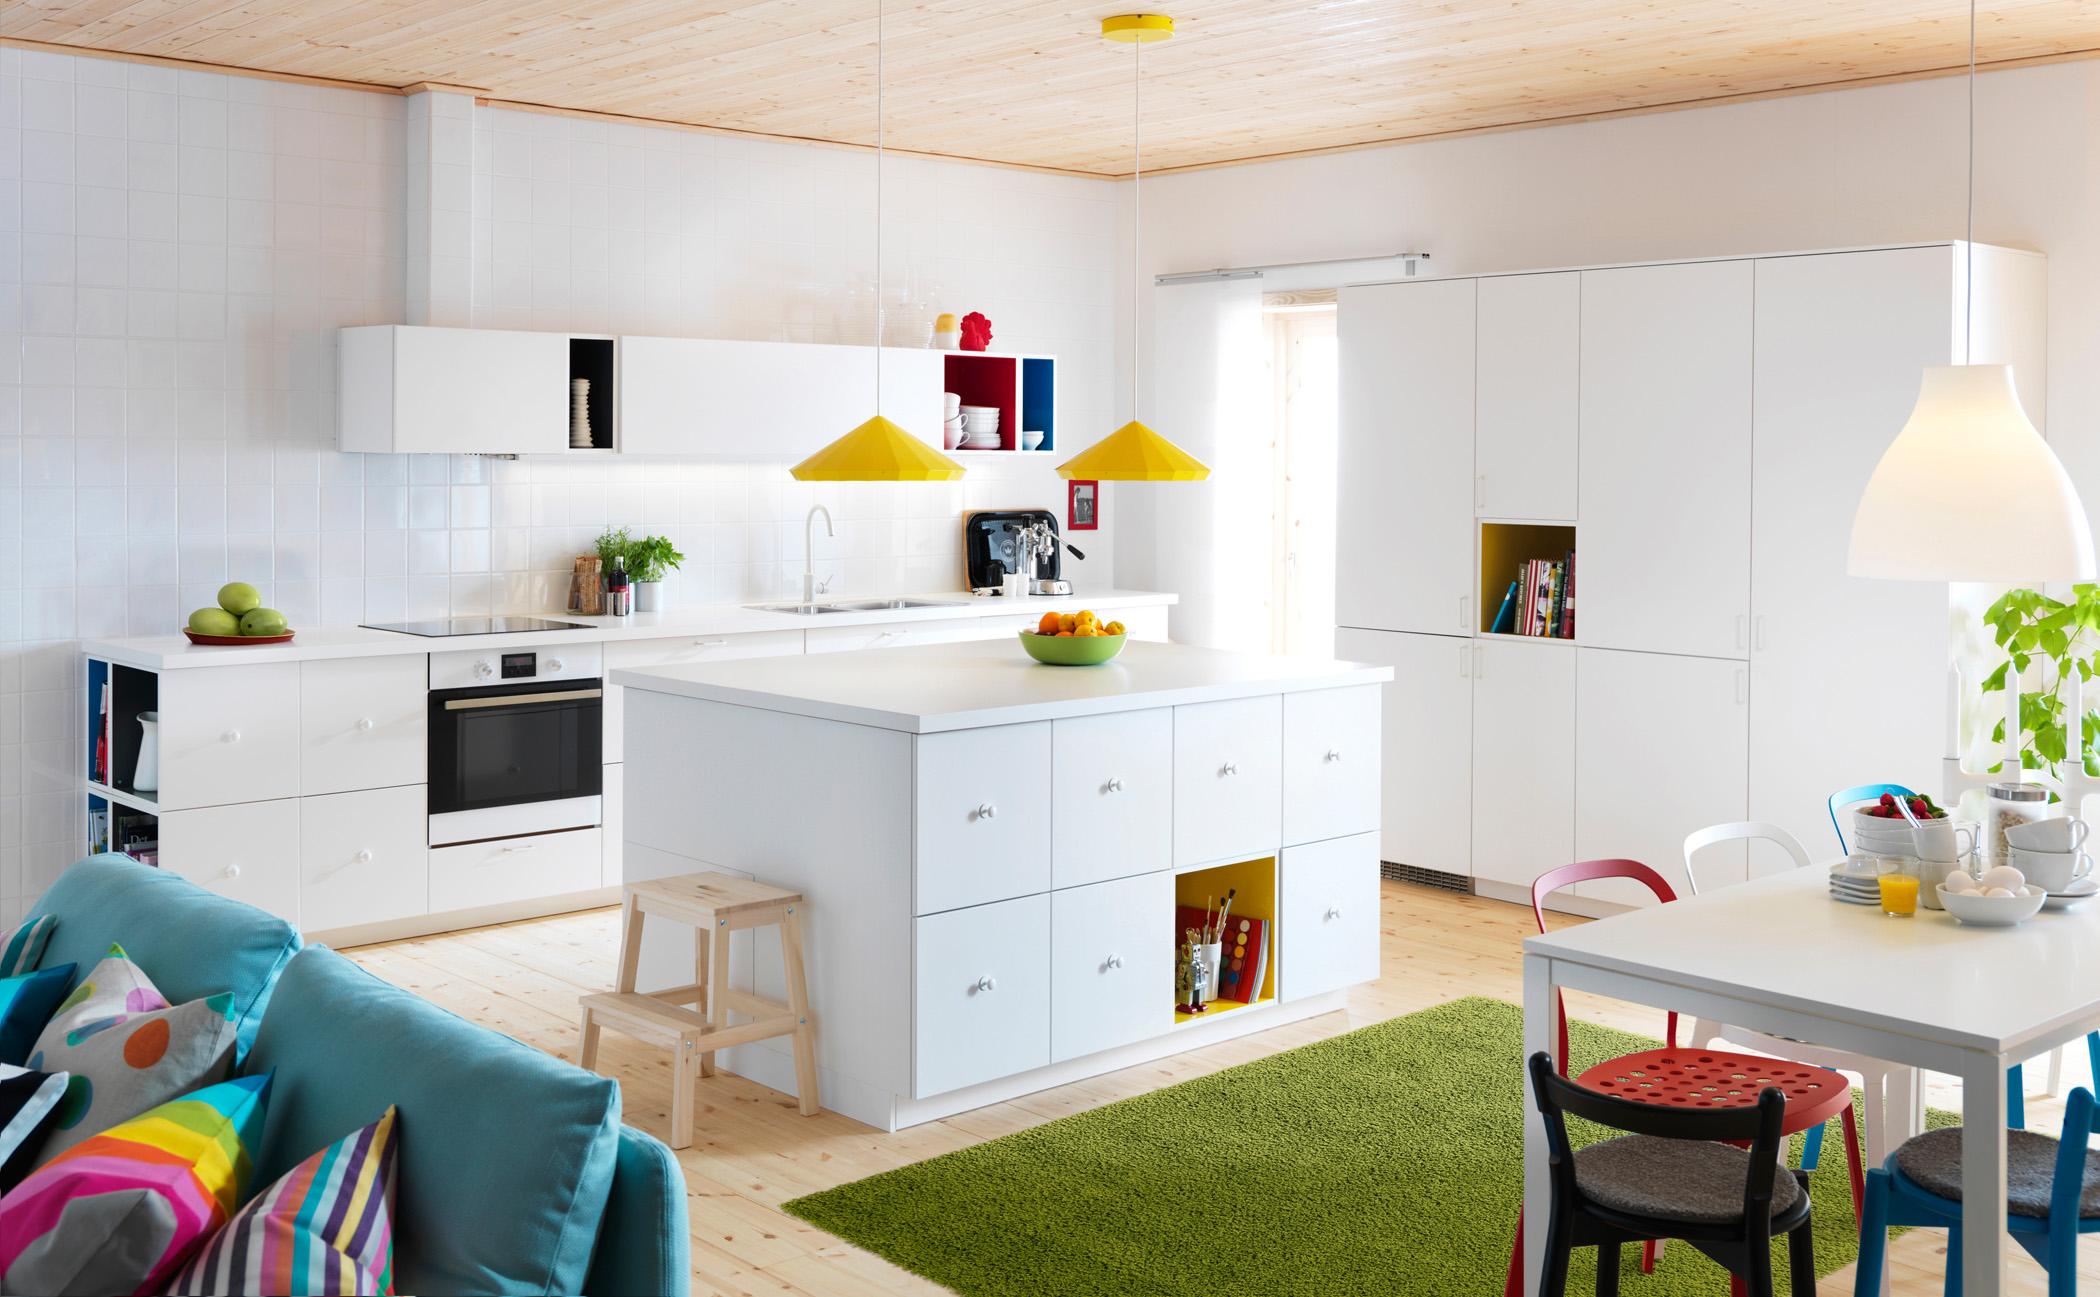 Farbenvielfalt in der Küche #teppich #esstisch #hängeschrank #schrank #ikea #pendelleuchte #sofa #weißerküchenschrank ©Inter IKEA Systems B.V./Thommy Bengtsson